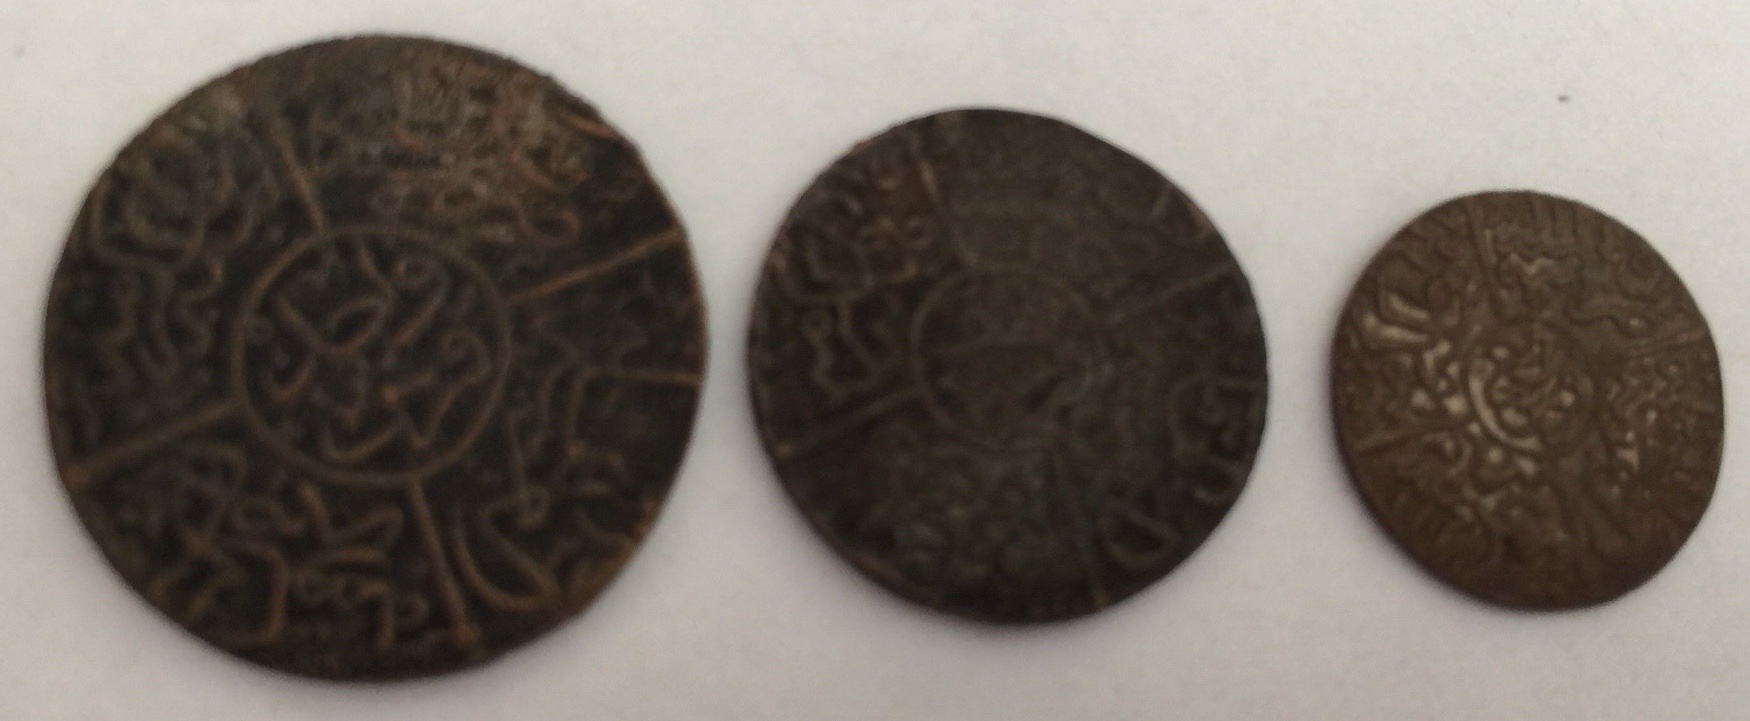 1334 Year 5 Saudi Arabia Hejaz Set ¼ ½ & 1 Piastre Bronze Coin Hussein Ben Ali